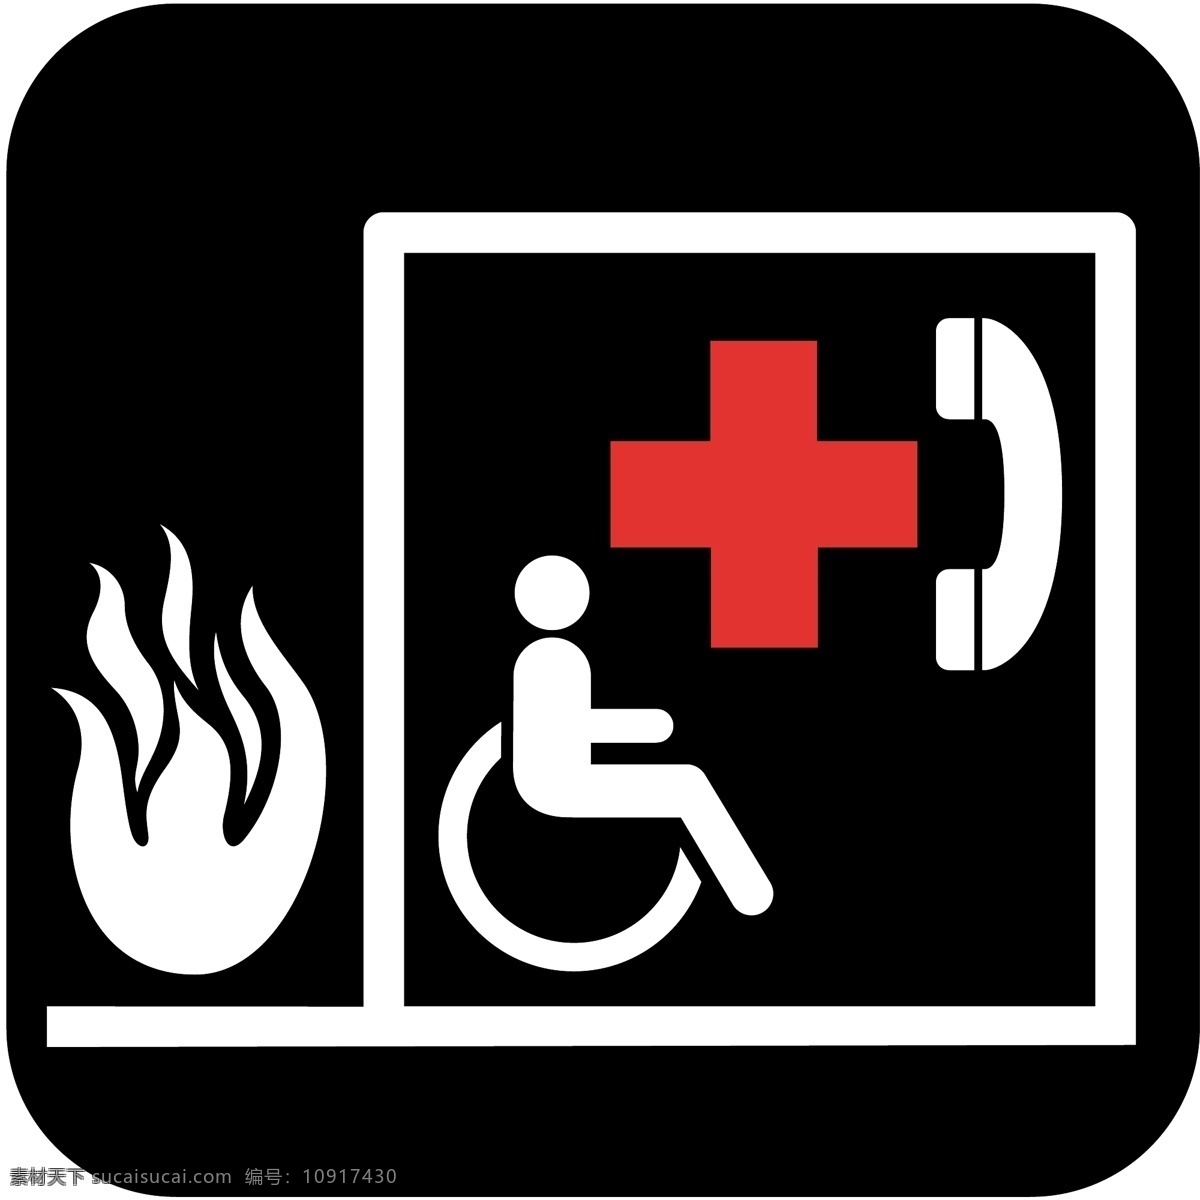 求助电话 求救电话 紧急电话 电话 图标 标志 火警电话 标志图标 公共标识标志